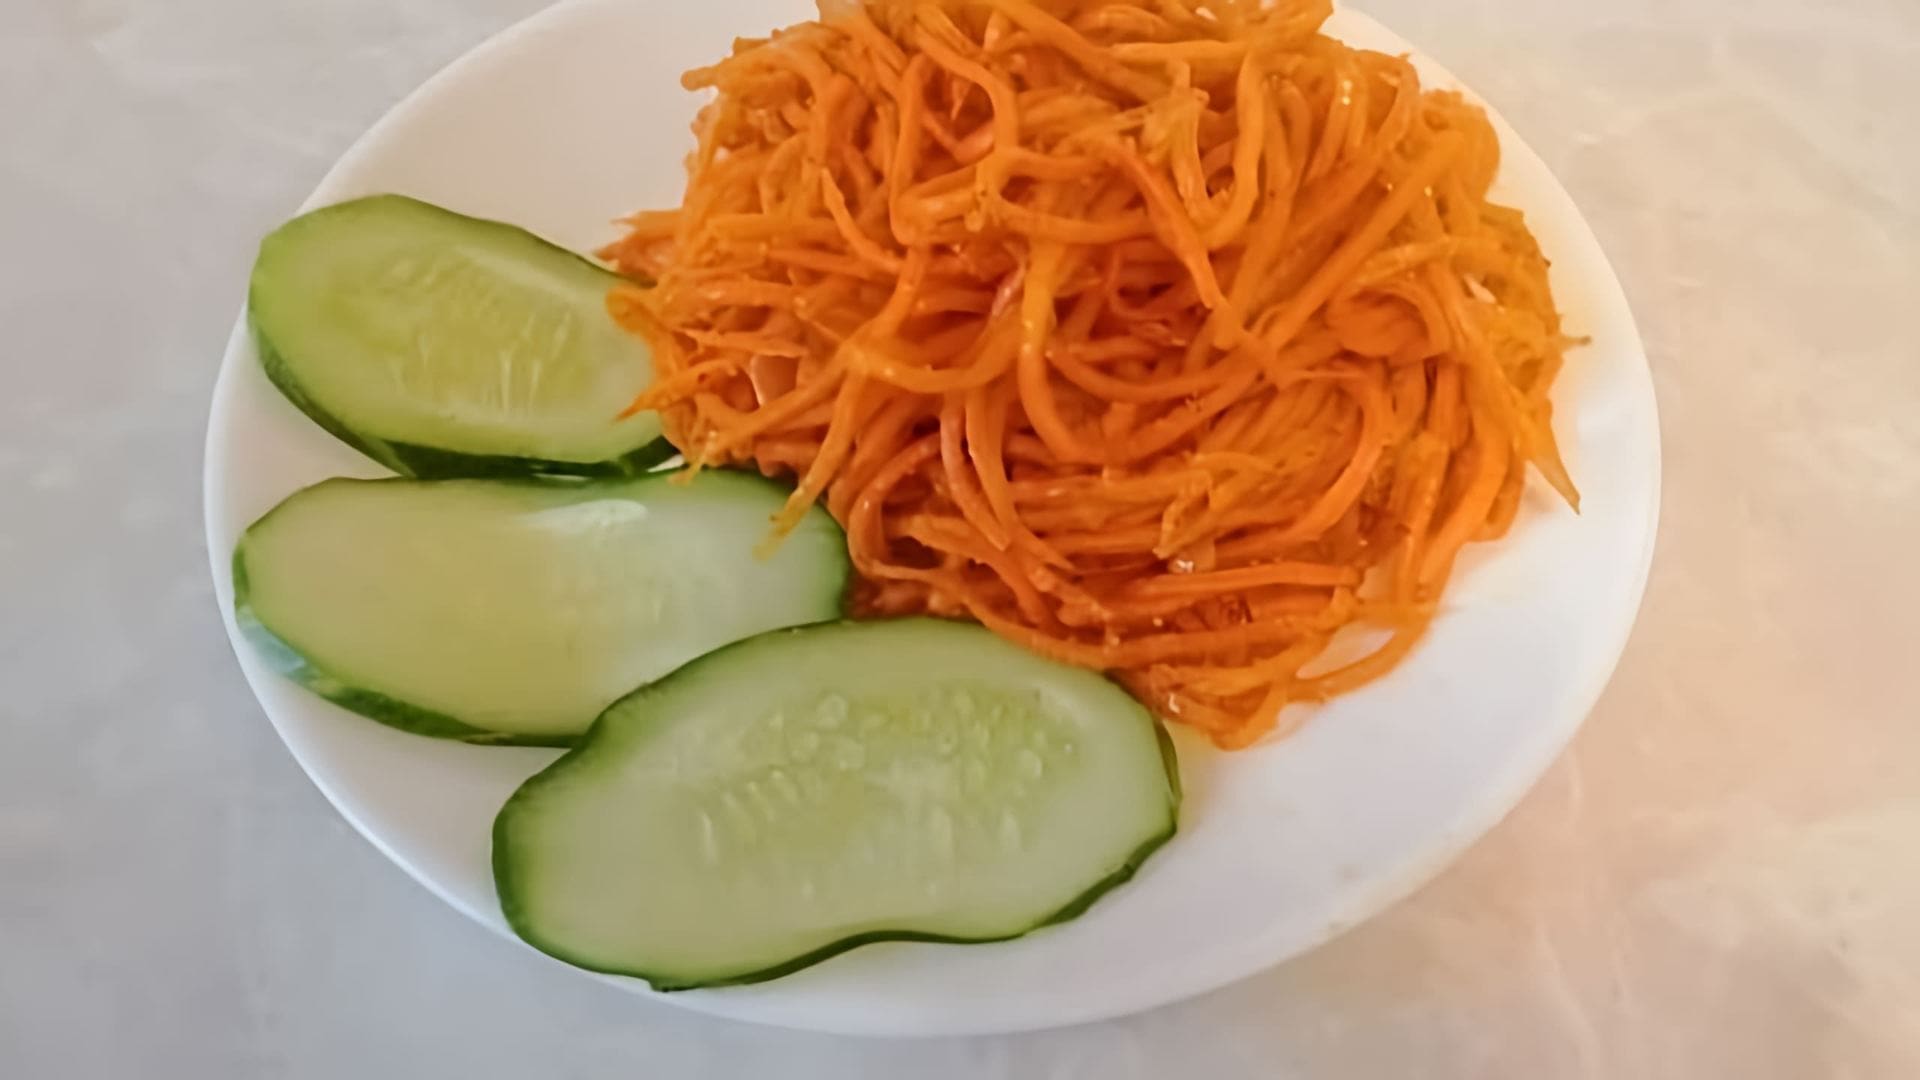 В этом видео-ролике будет представлен оригинальный рецепт приготовления моркови по-корейски с использованием соевого соуса